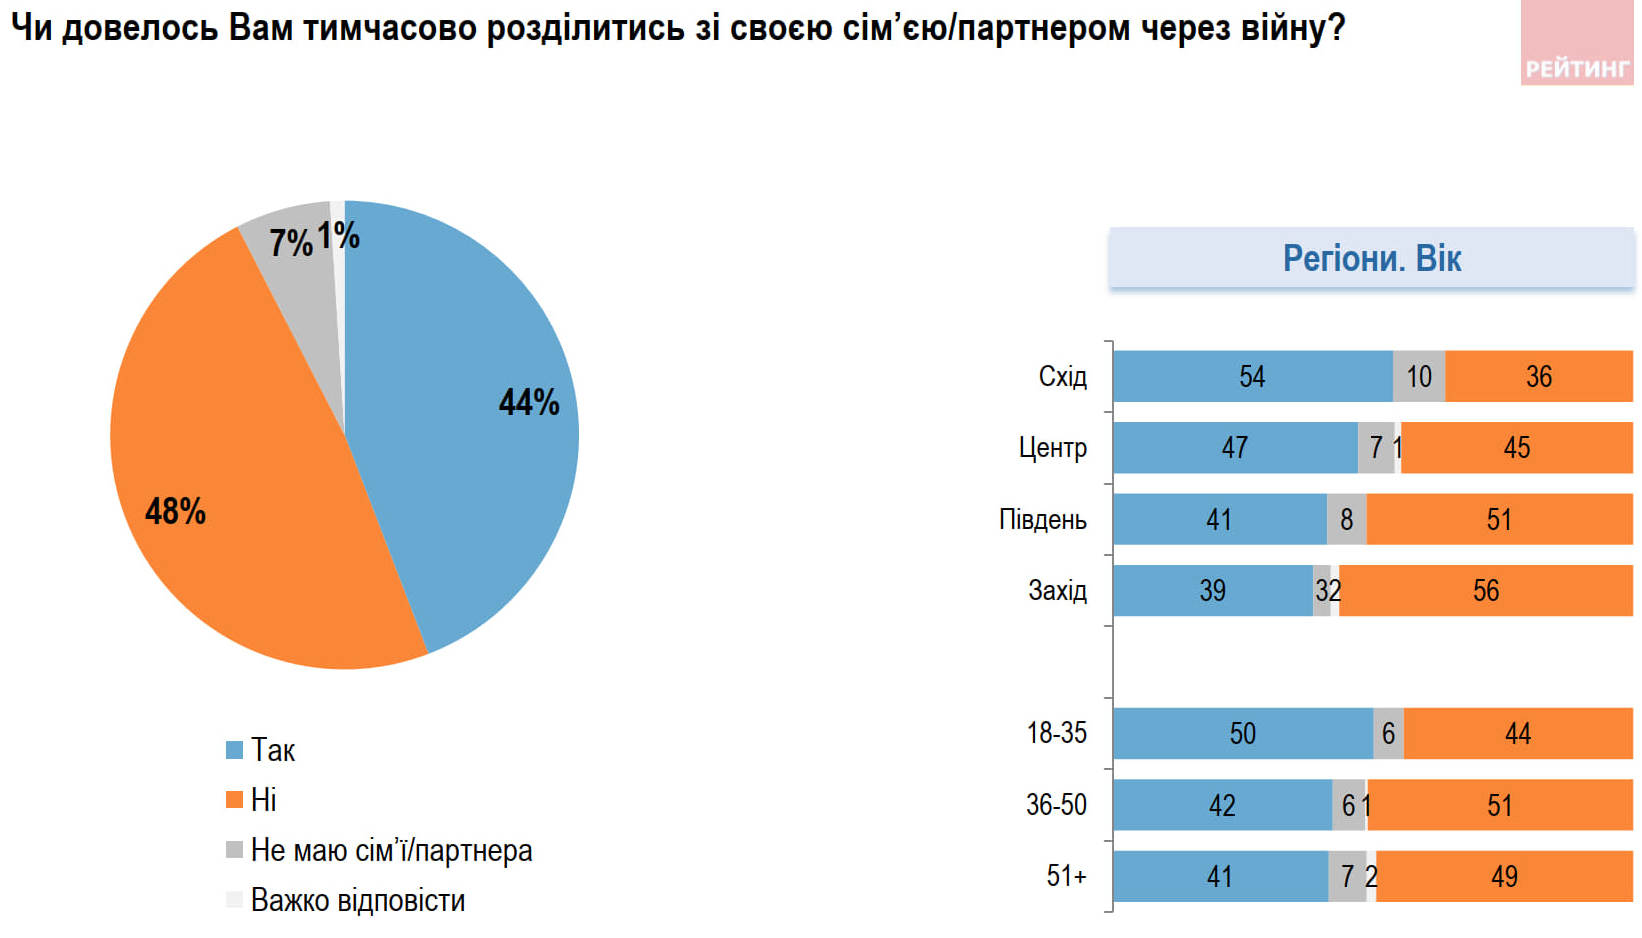 Война разделила семьи почти половины украинцев, каждый 5-й уехал с места проживания: опрос